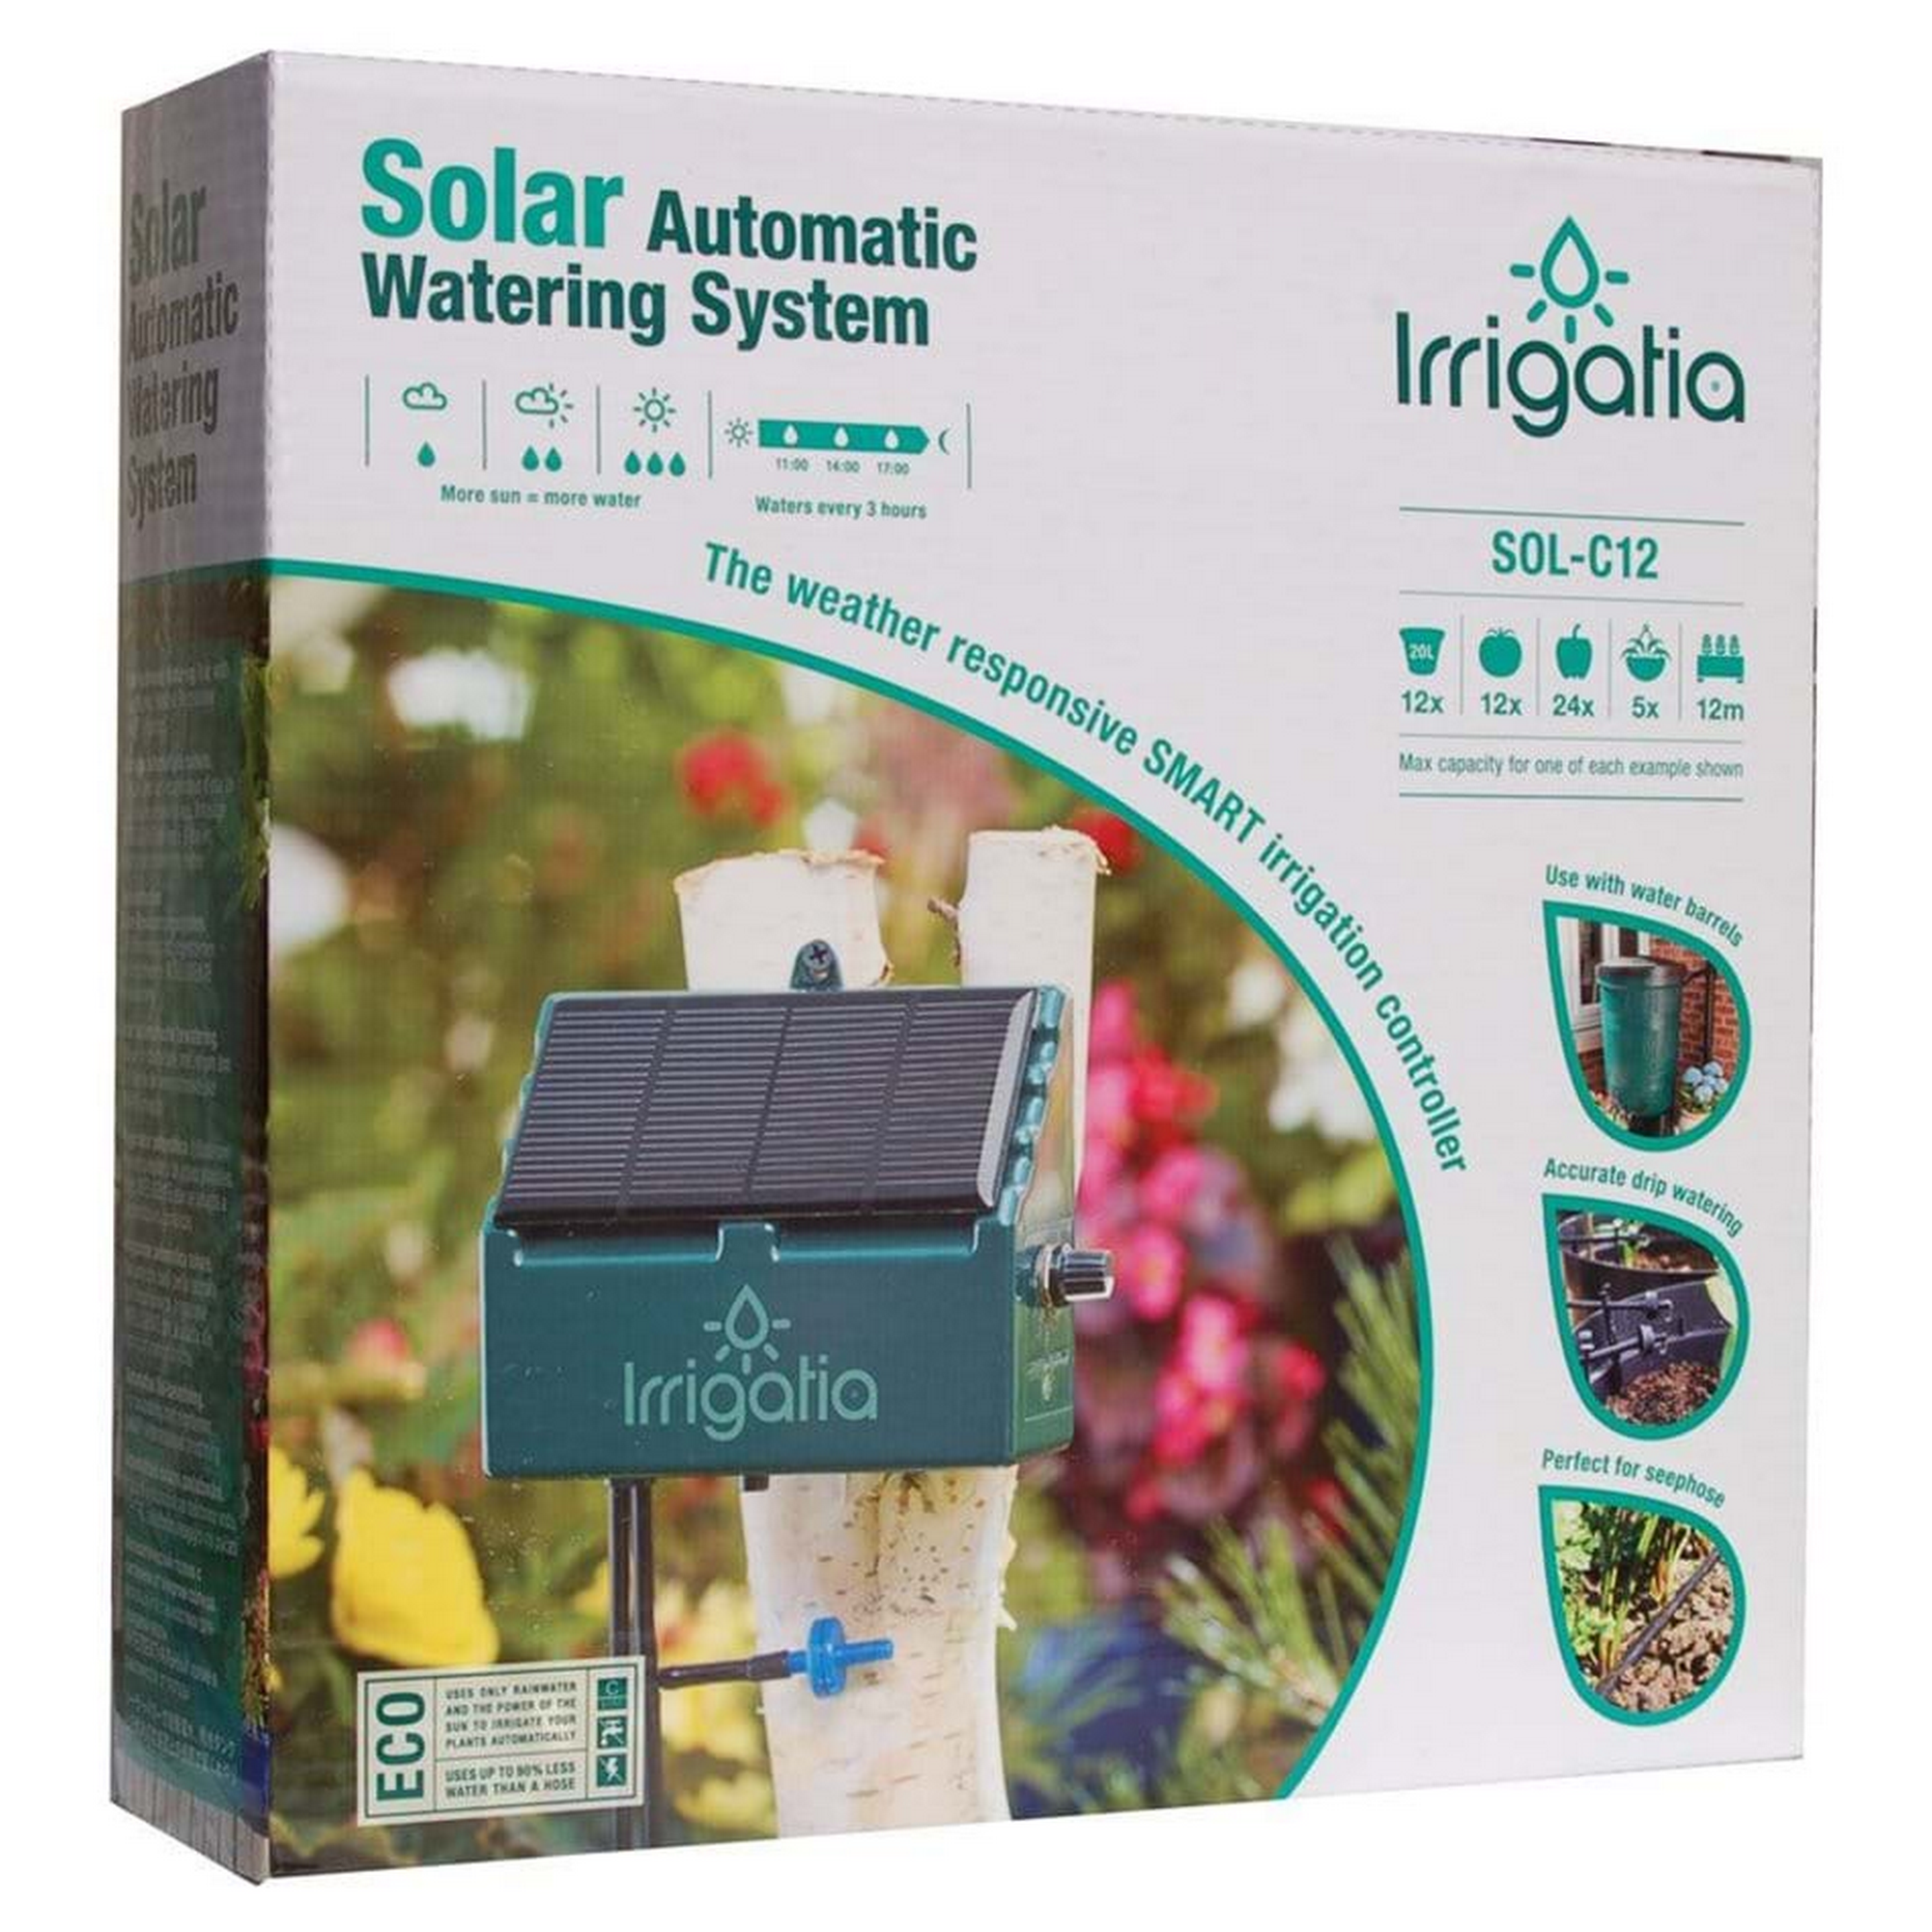 Solar-Bewässerungssystem 'Irrigatia SOL-C12' 12 m + product picture